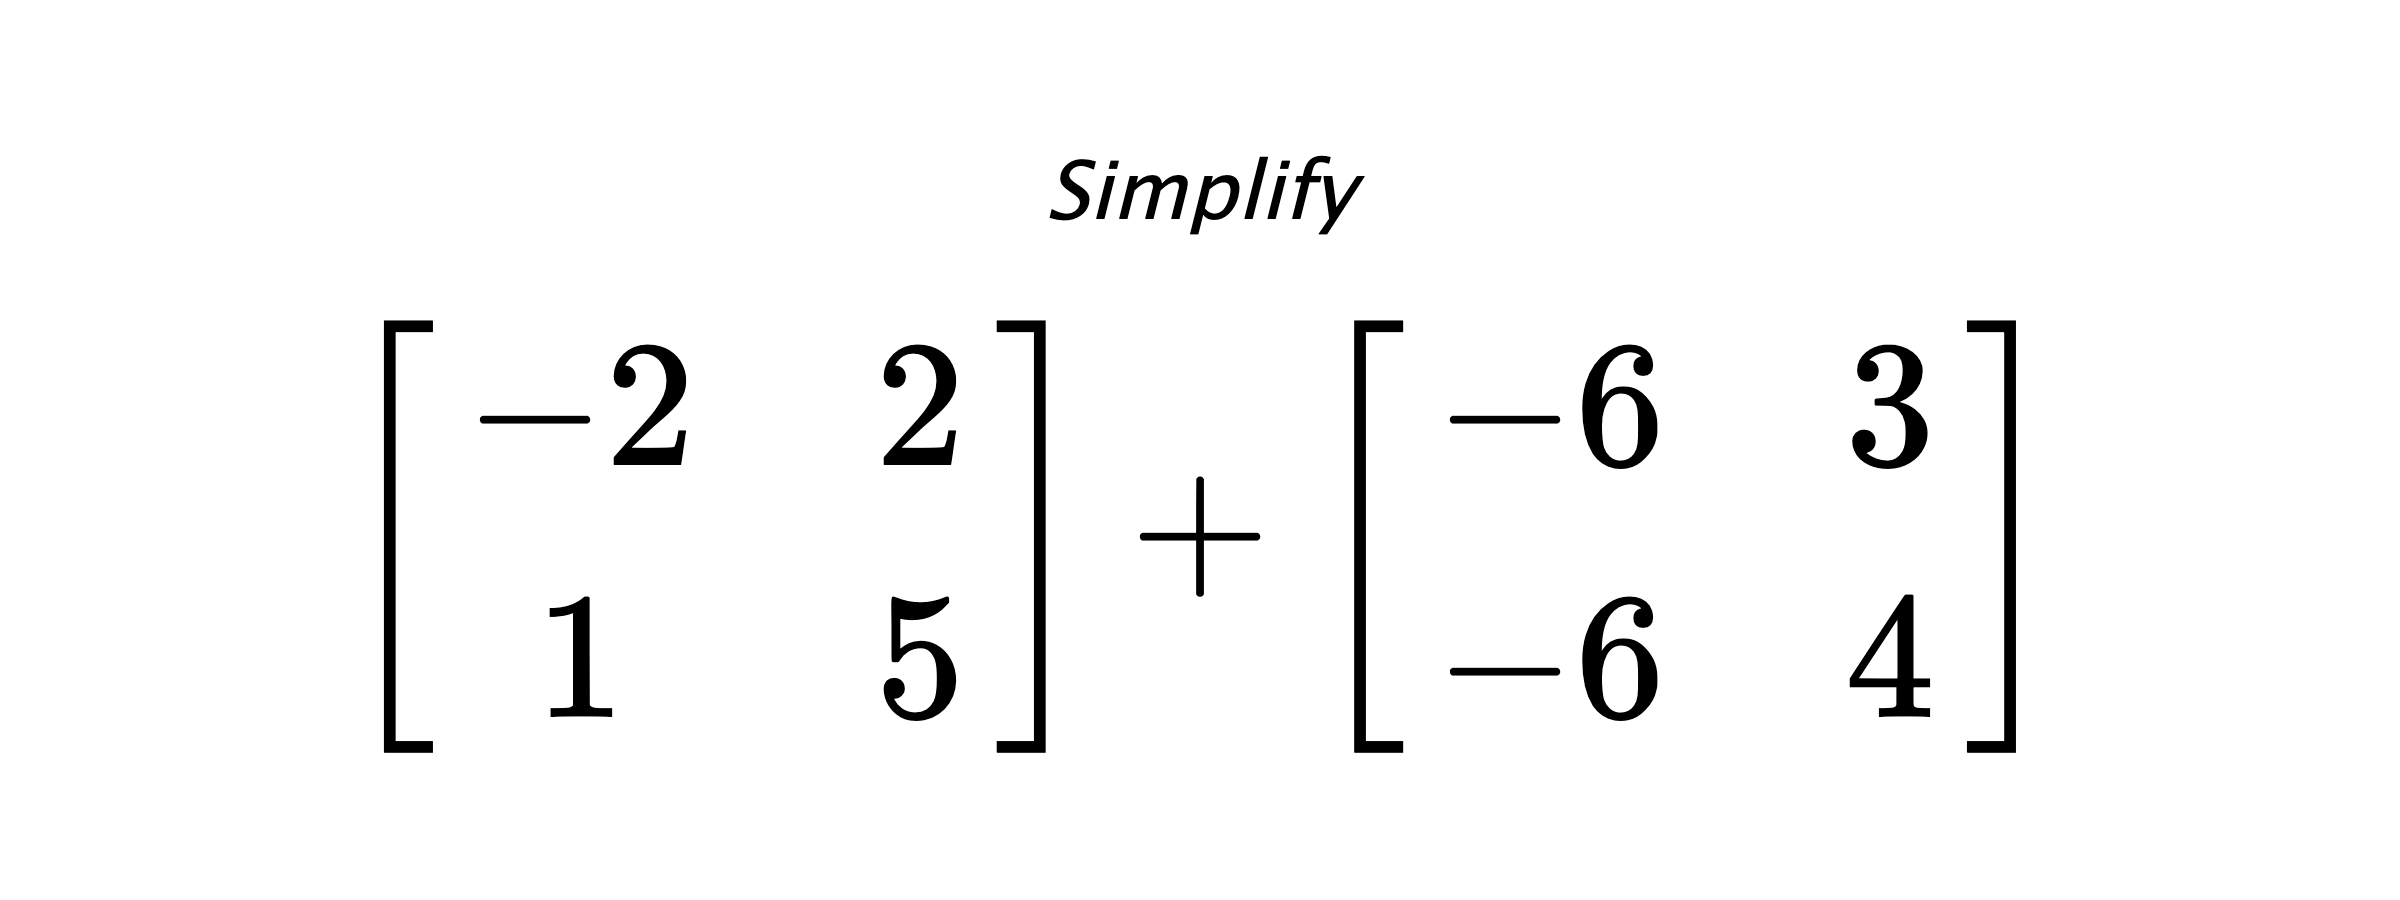 Simplify $ \begin{bmatrix} -2 & 2 \\ 1 & 5 \end{bmatrix} + \begin{bmatrix} -6 & 3 \\ -6 & 4 \end{bmatrix} $